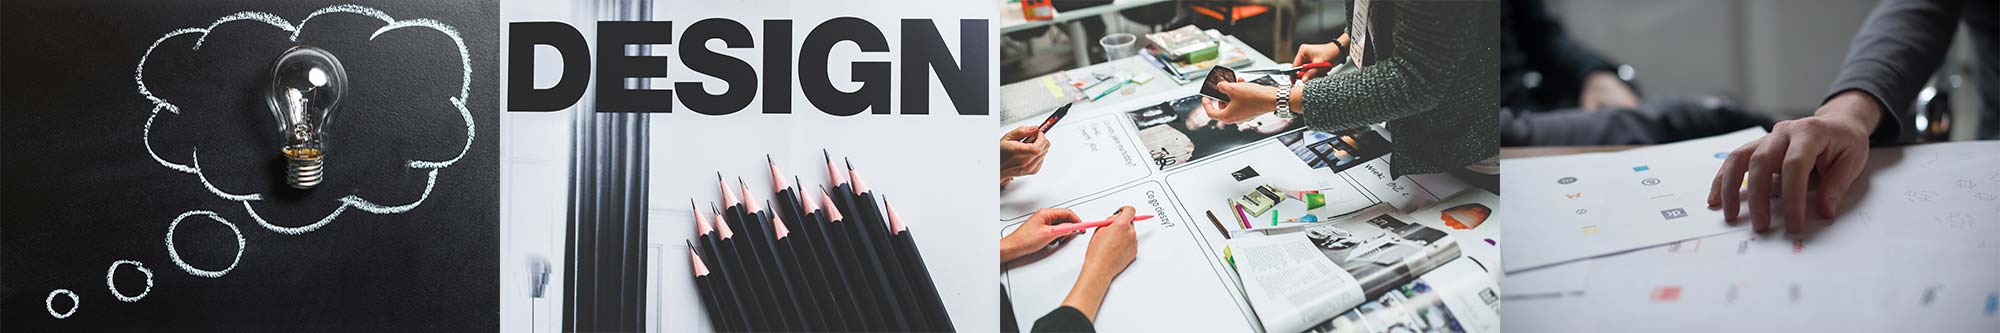 Corporate Design und Logogestaltung - Ihre Corporate Design Agentur aus Berlin